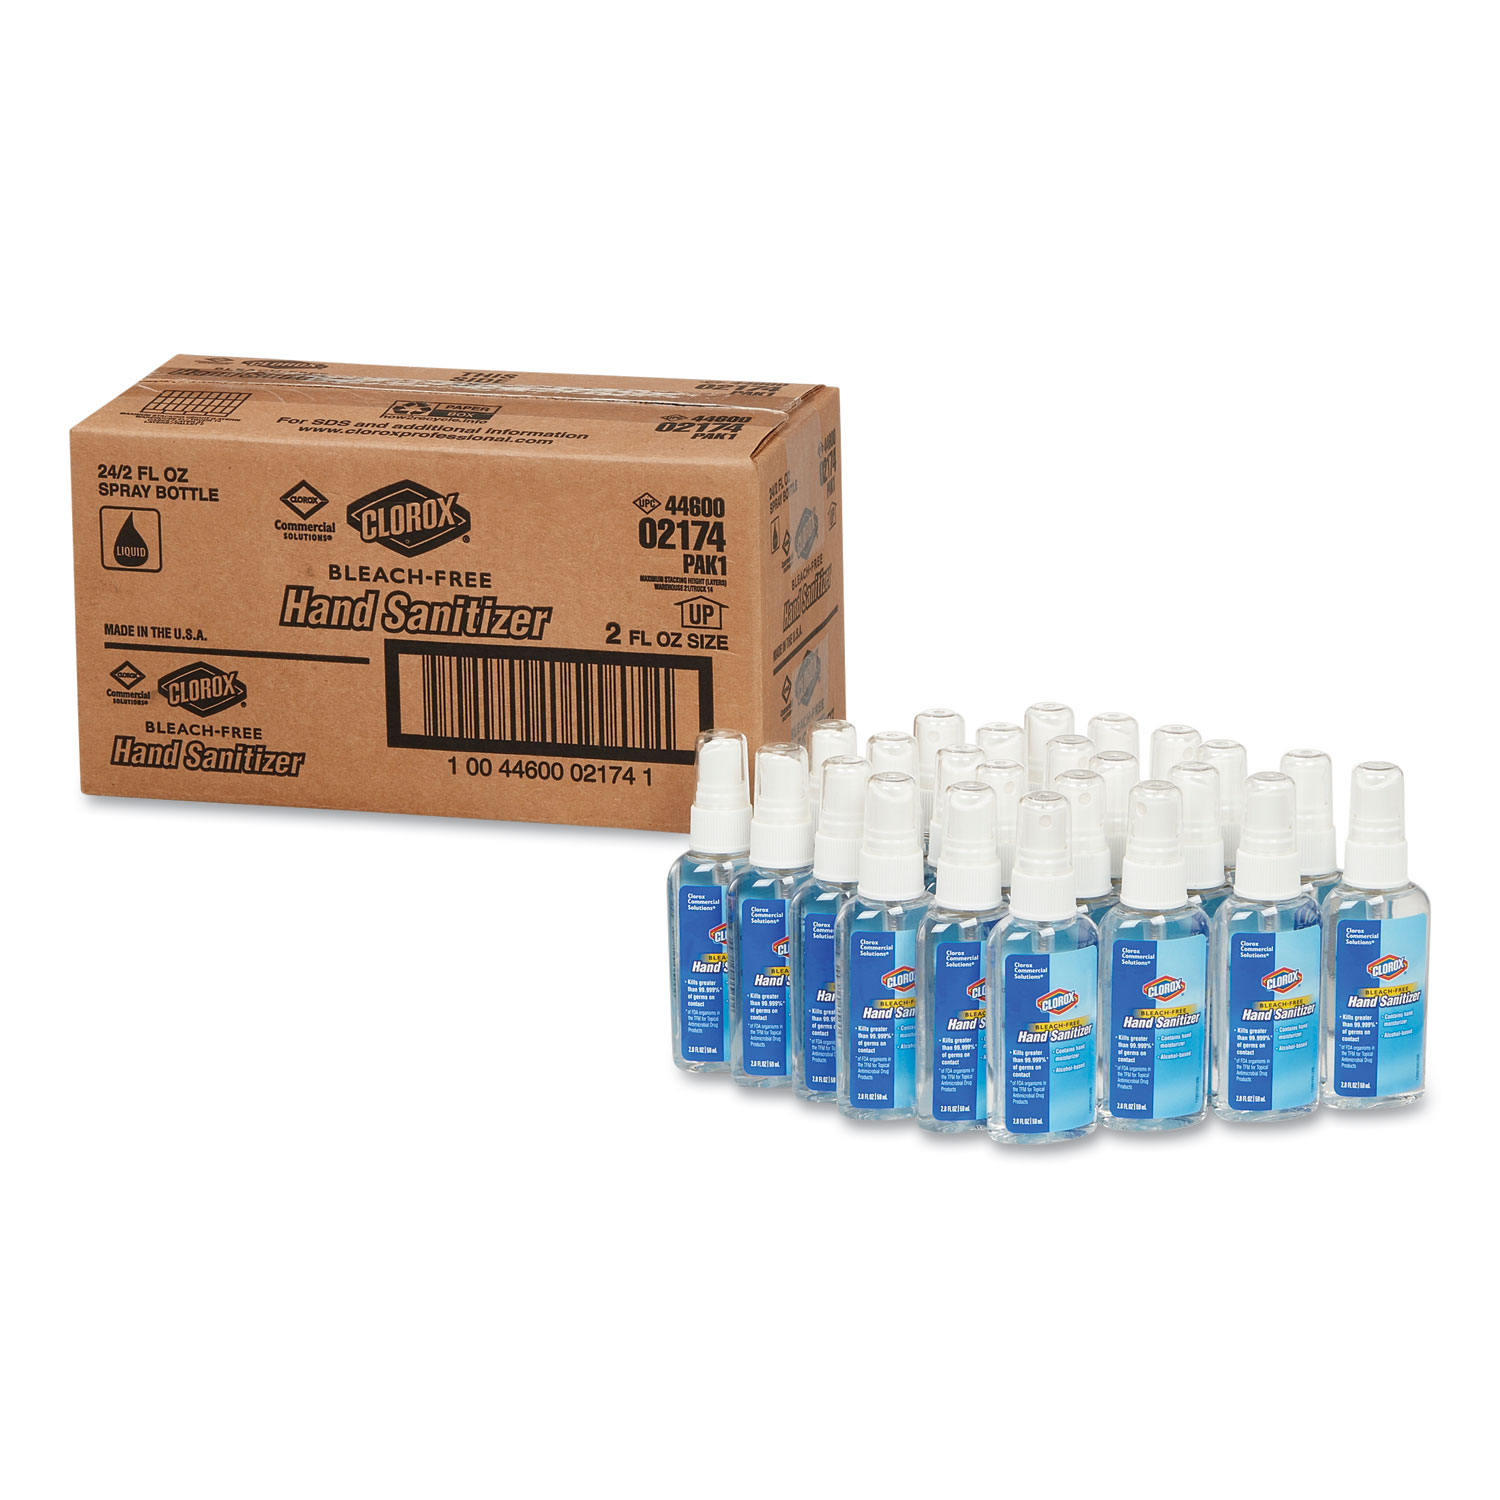  Clorox 02174 Hand Sanitizer, 2 oz Spray, 24/Carton (CLO02174) 